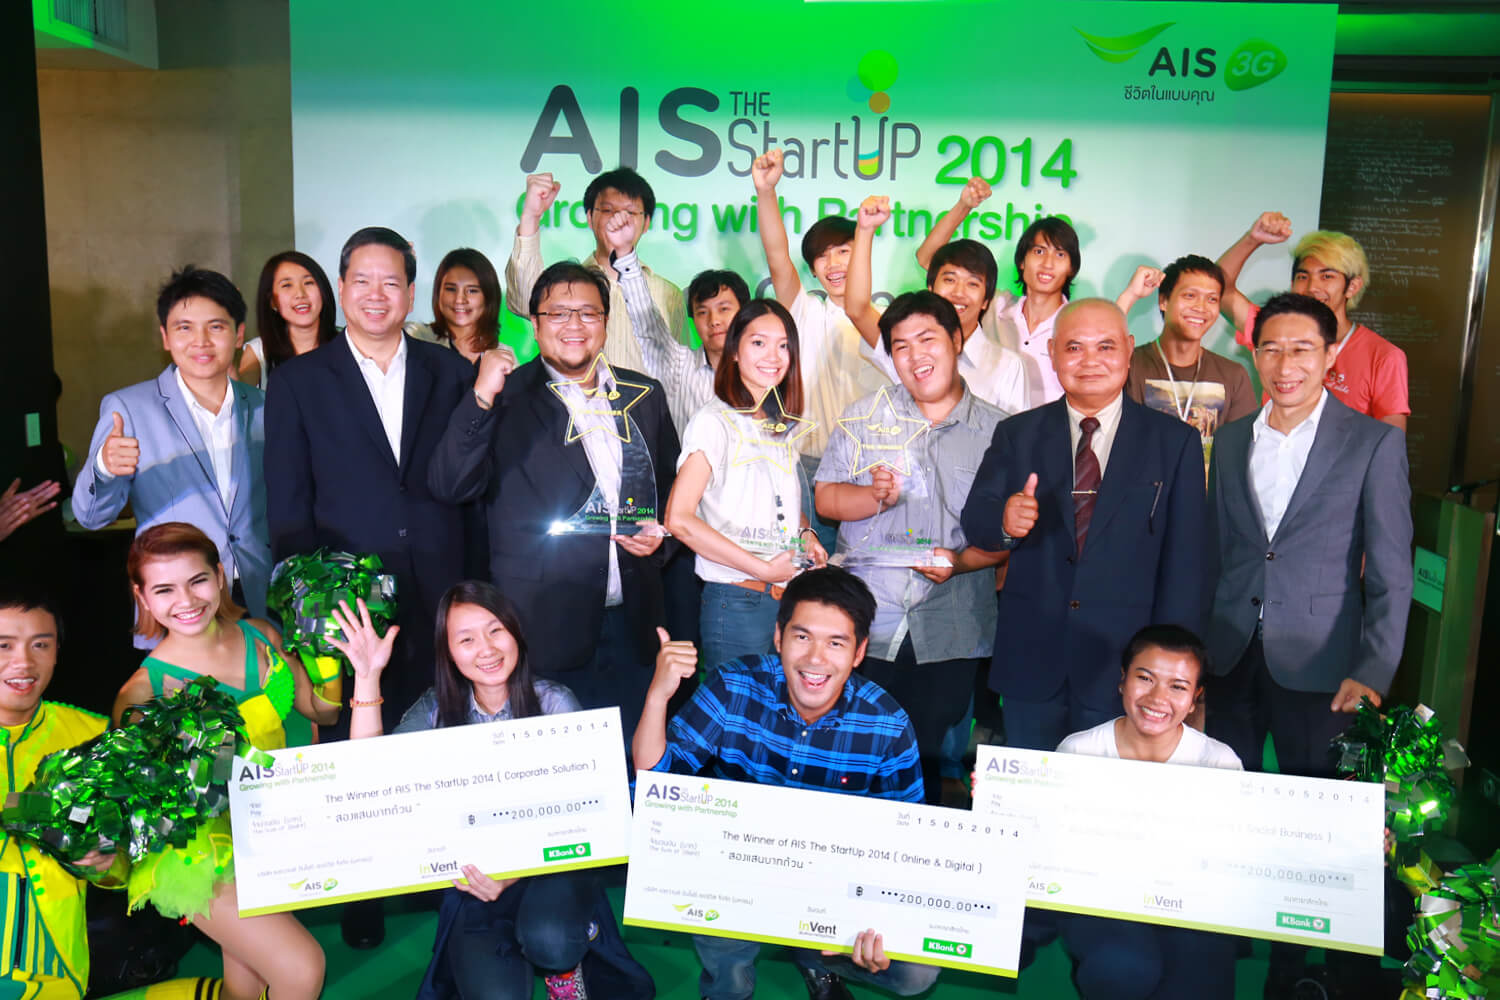 เอไอเอส ประกาศผลโครงการ “AIS The StartUp 2015” - Startup Thailand